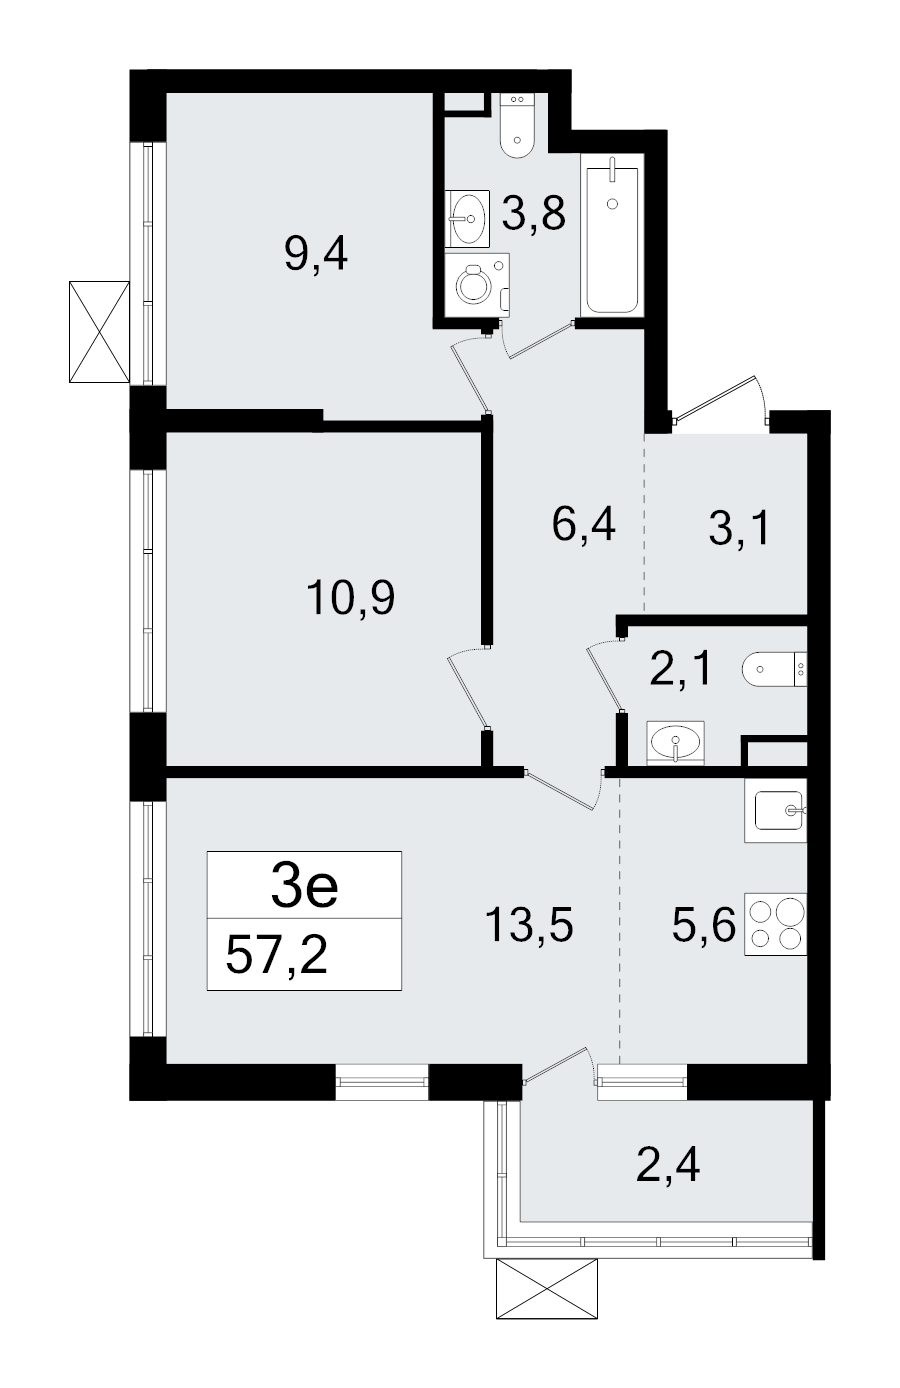 3-комнатная (Евро) квартира, 57.2 м² - планировка, фото №1